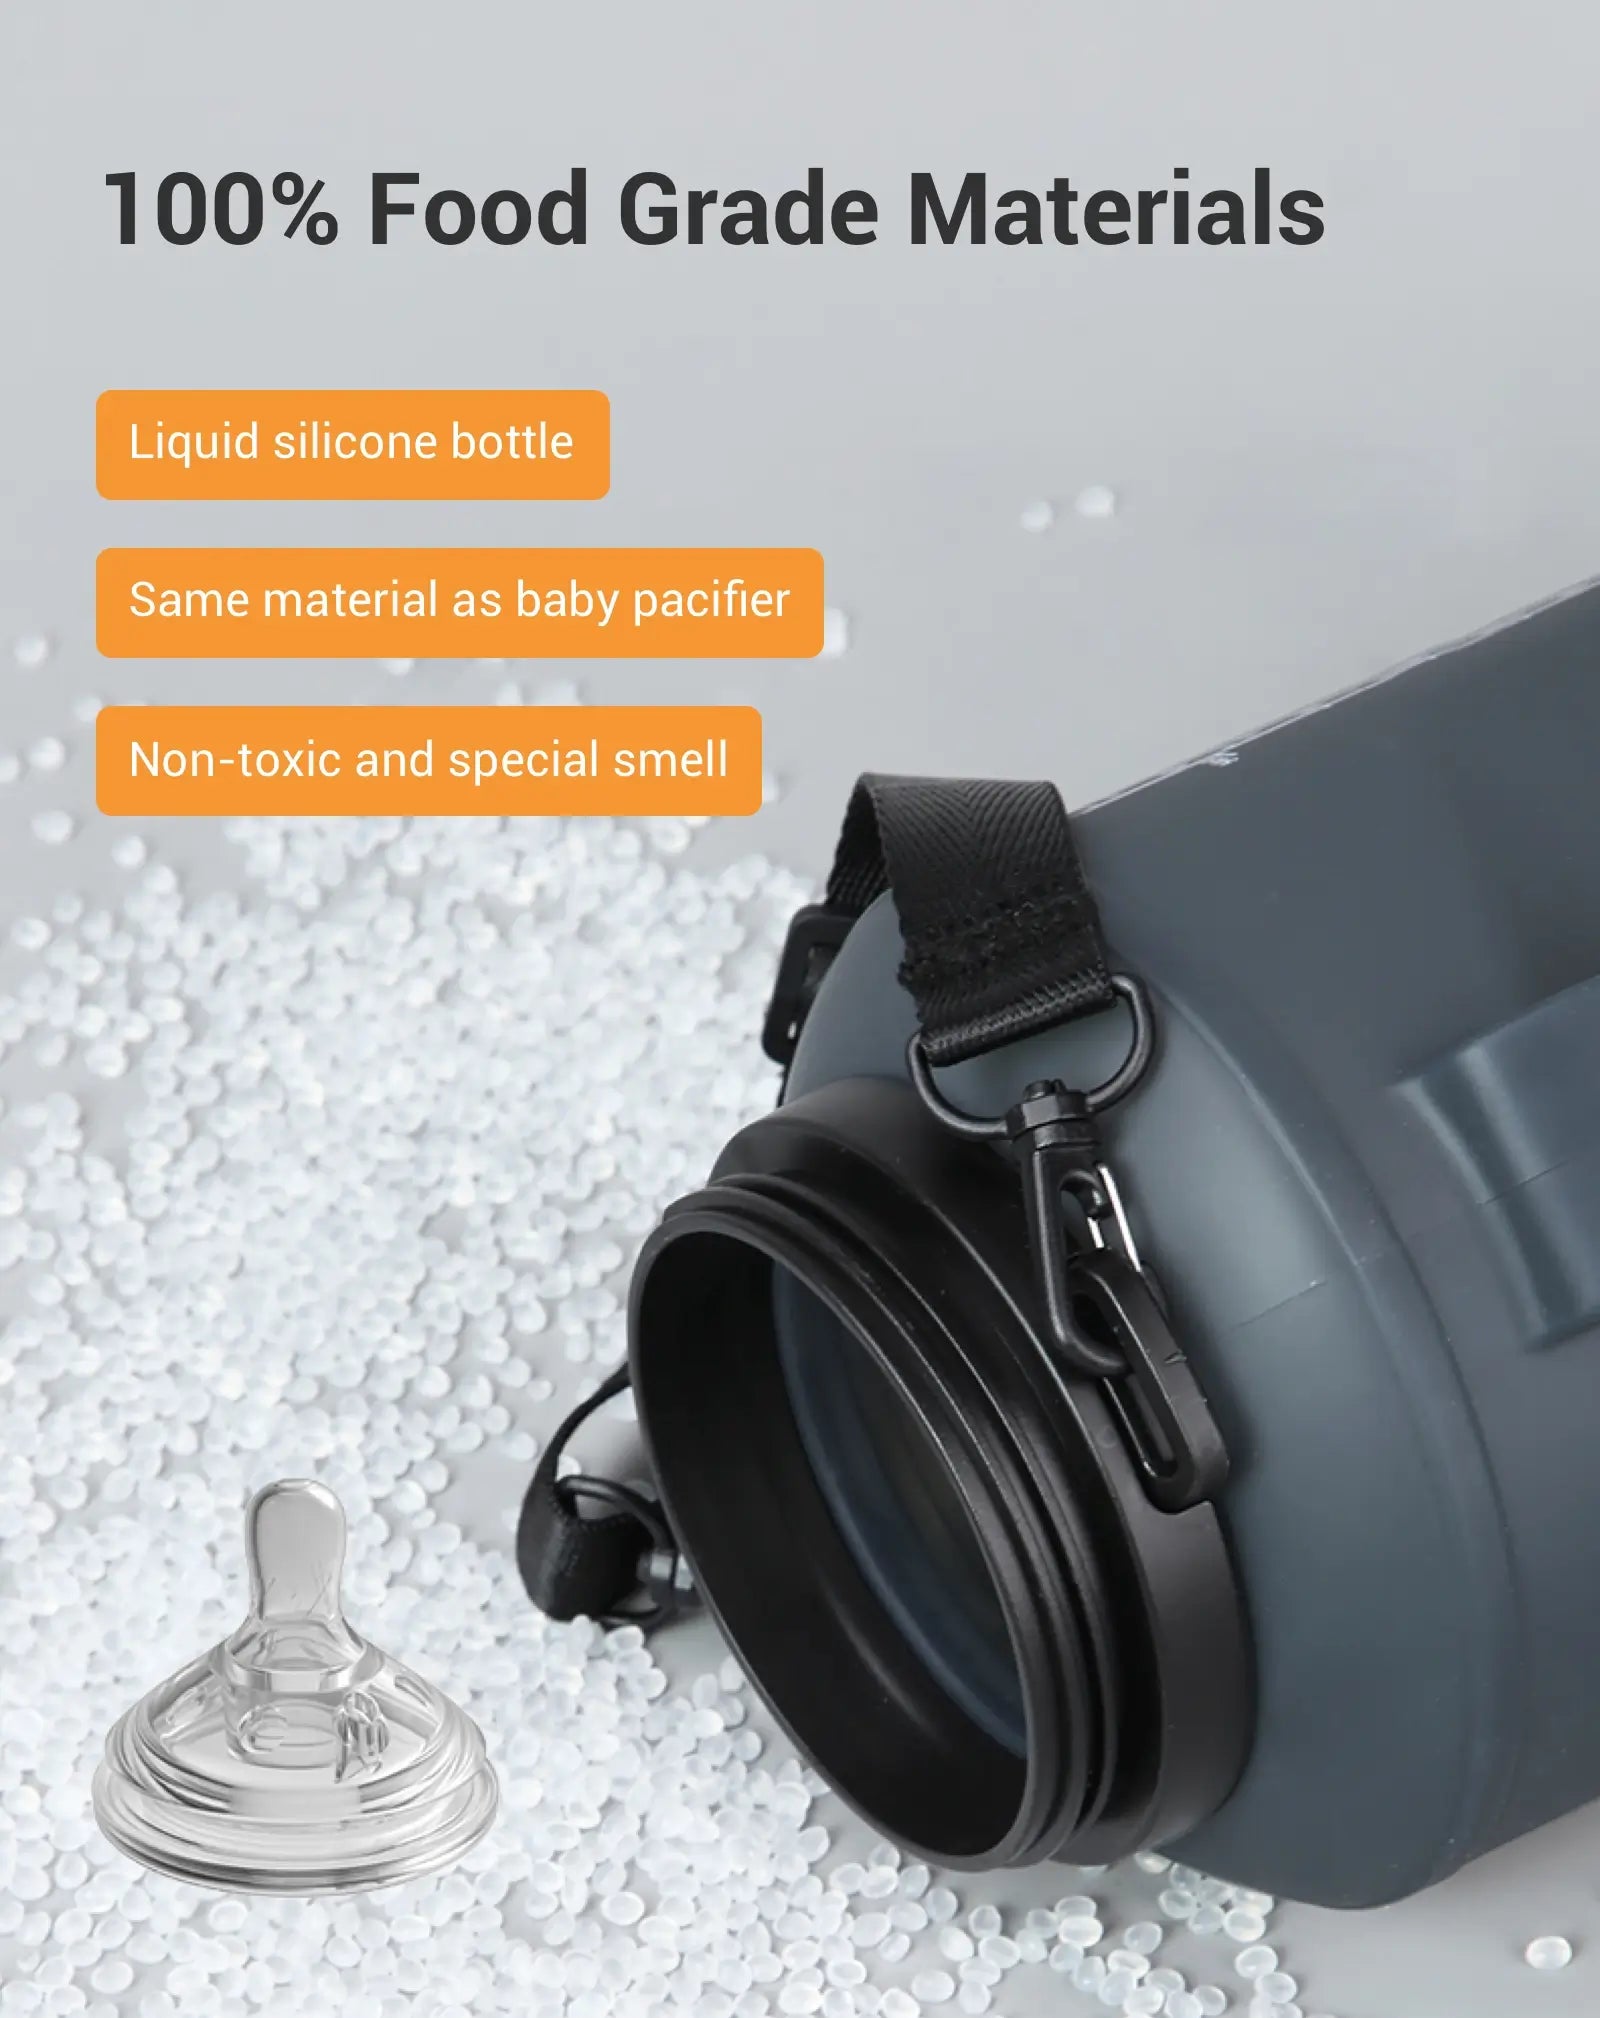 100% Food Grade Materials